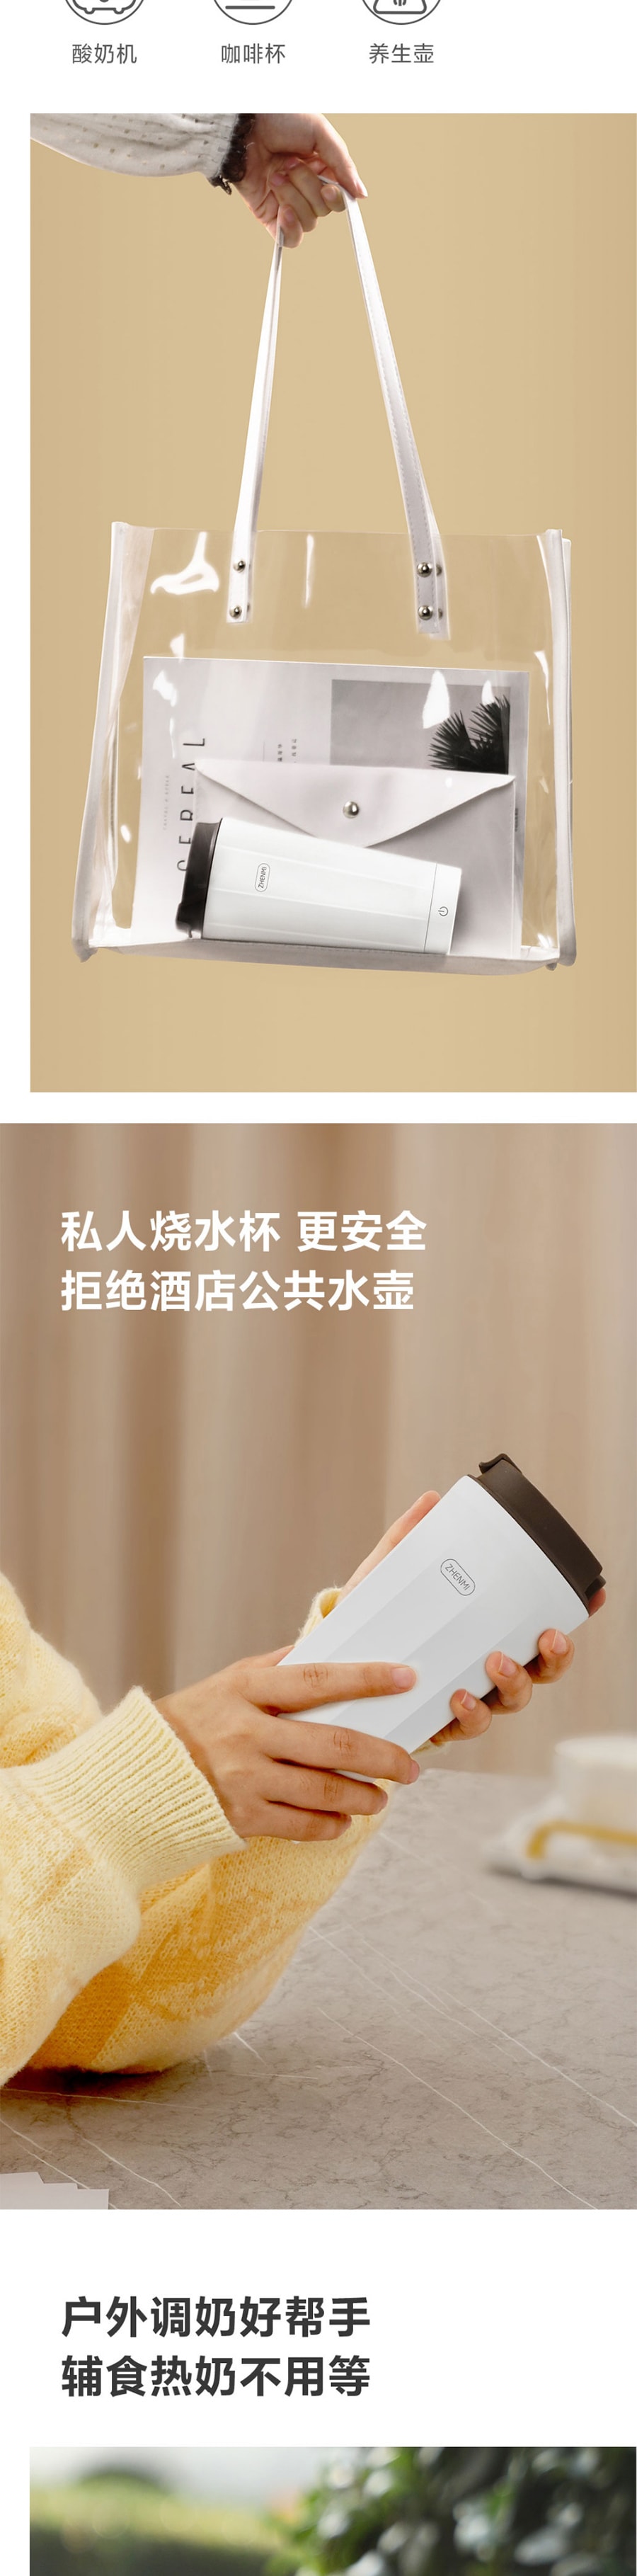 【中国直邮】小米有品 臻米USB超魔力电热杯 350ML 白色